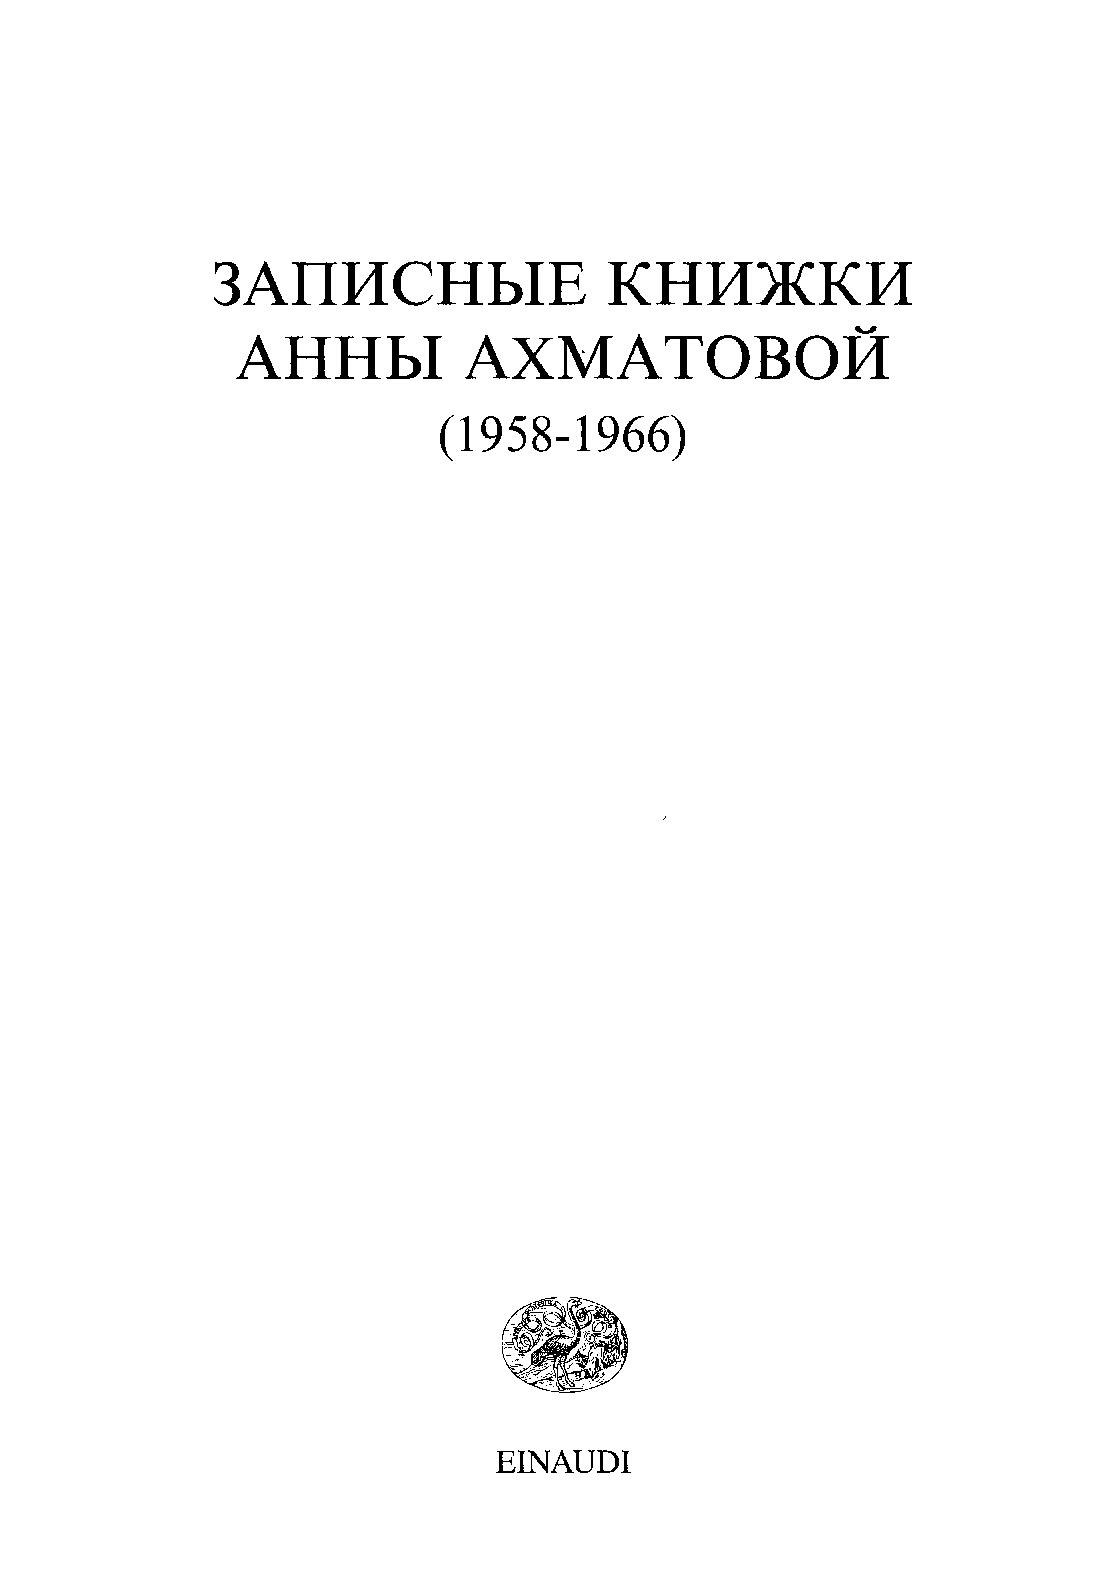 Записные книжки (1958-1966)